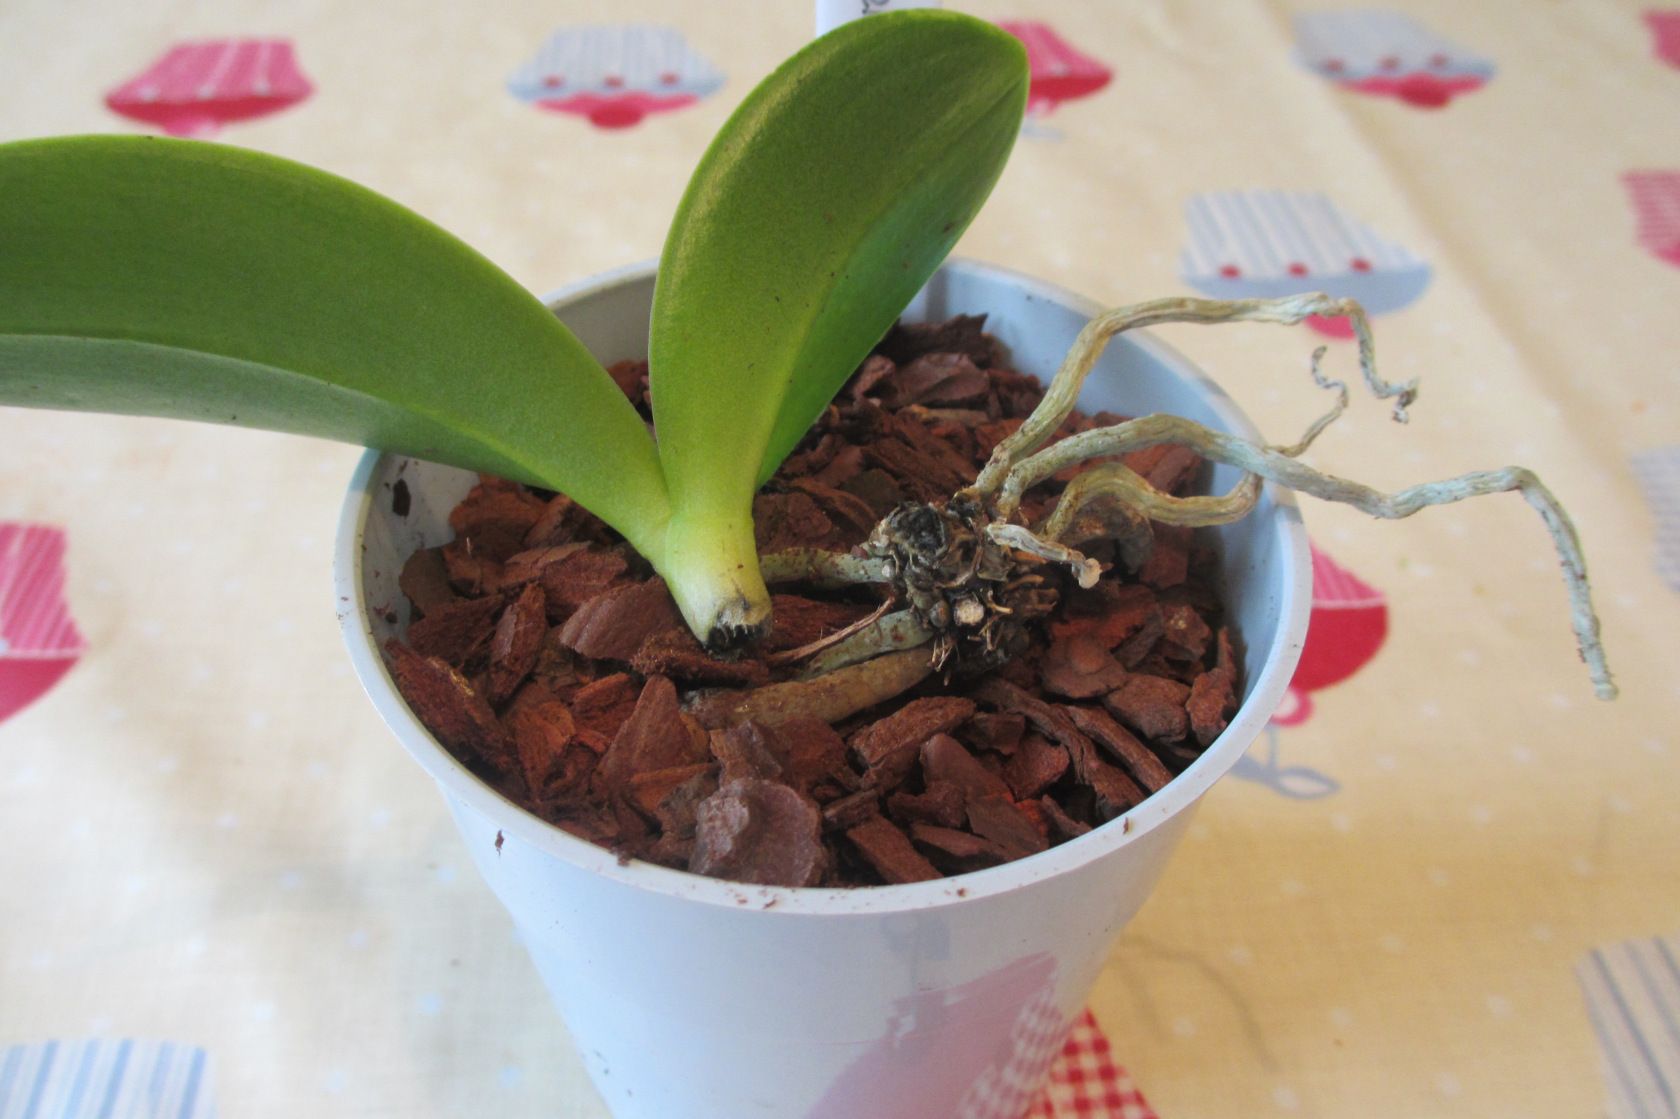 Как реанимировать орхидею, если сгнили корни: способы